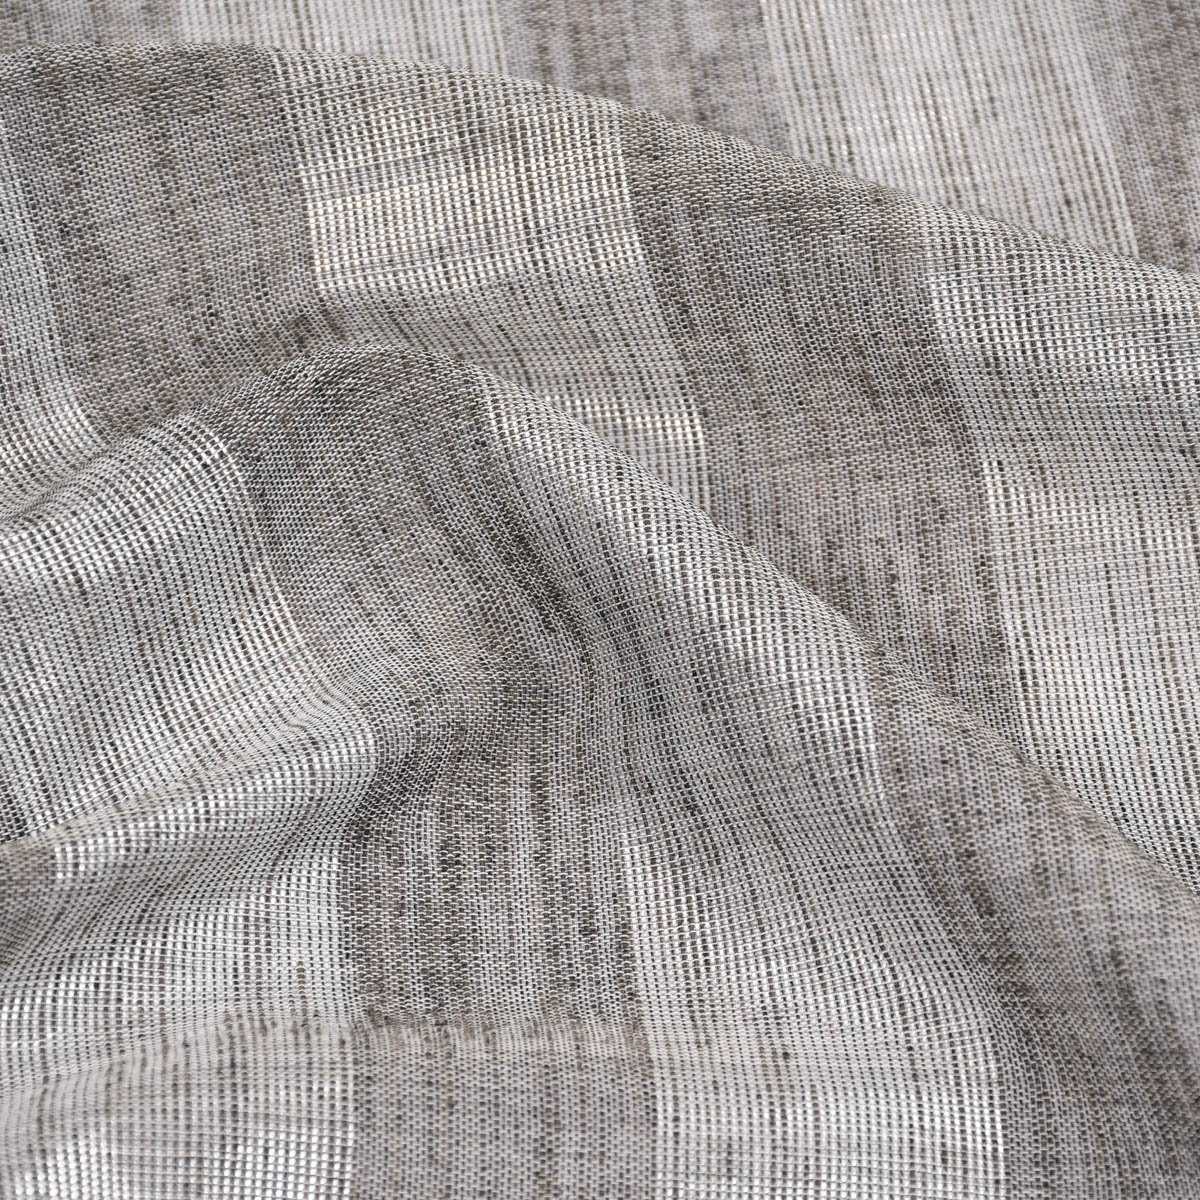 Stores silber Shine 30, Längsstreifen halbtransparent, Meterware Textil Leinenstruktur überbreit grau Kunstfaser, Rasch